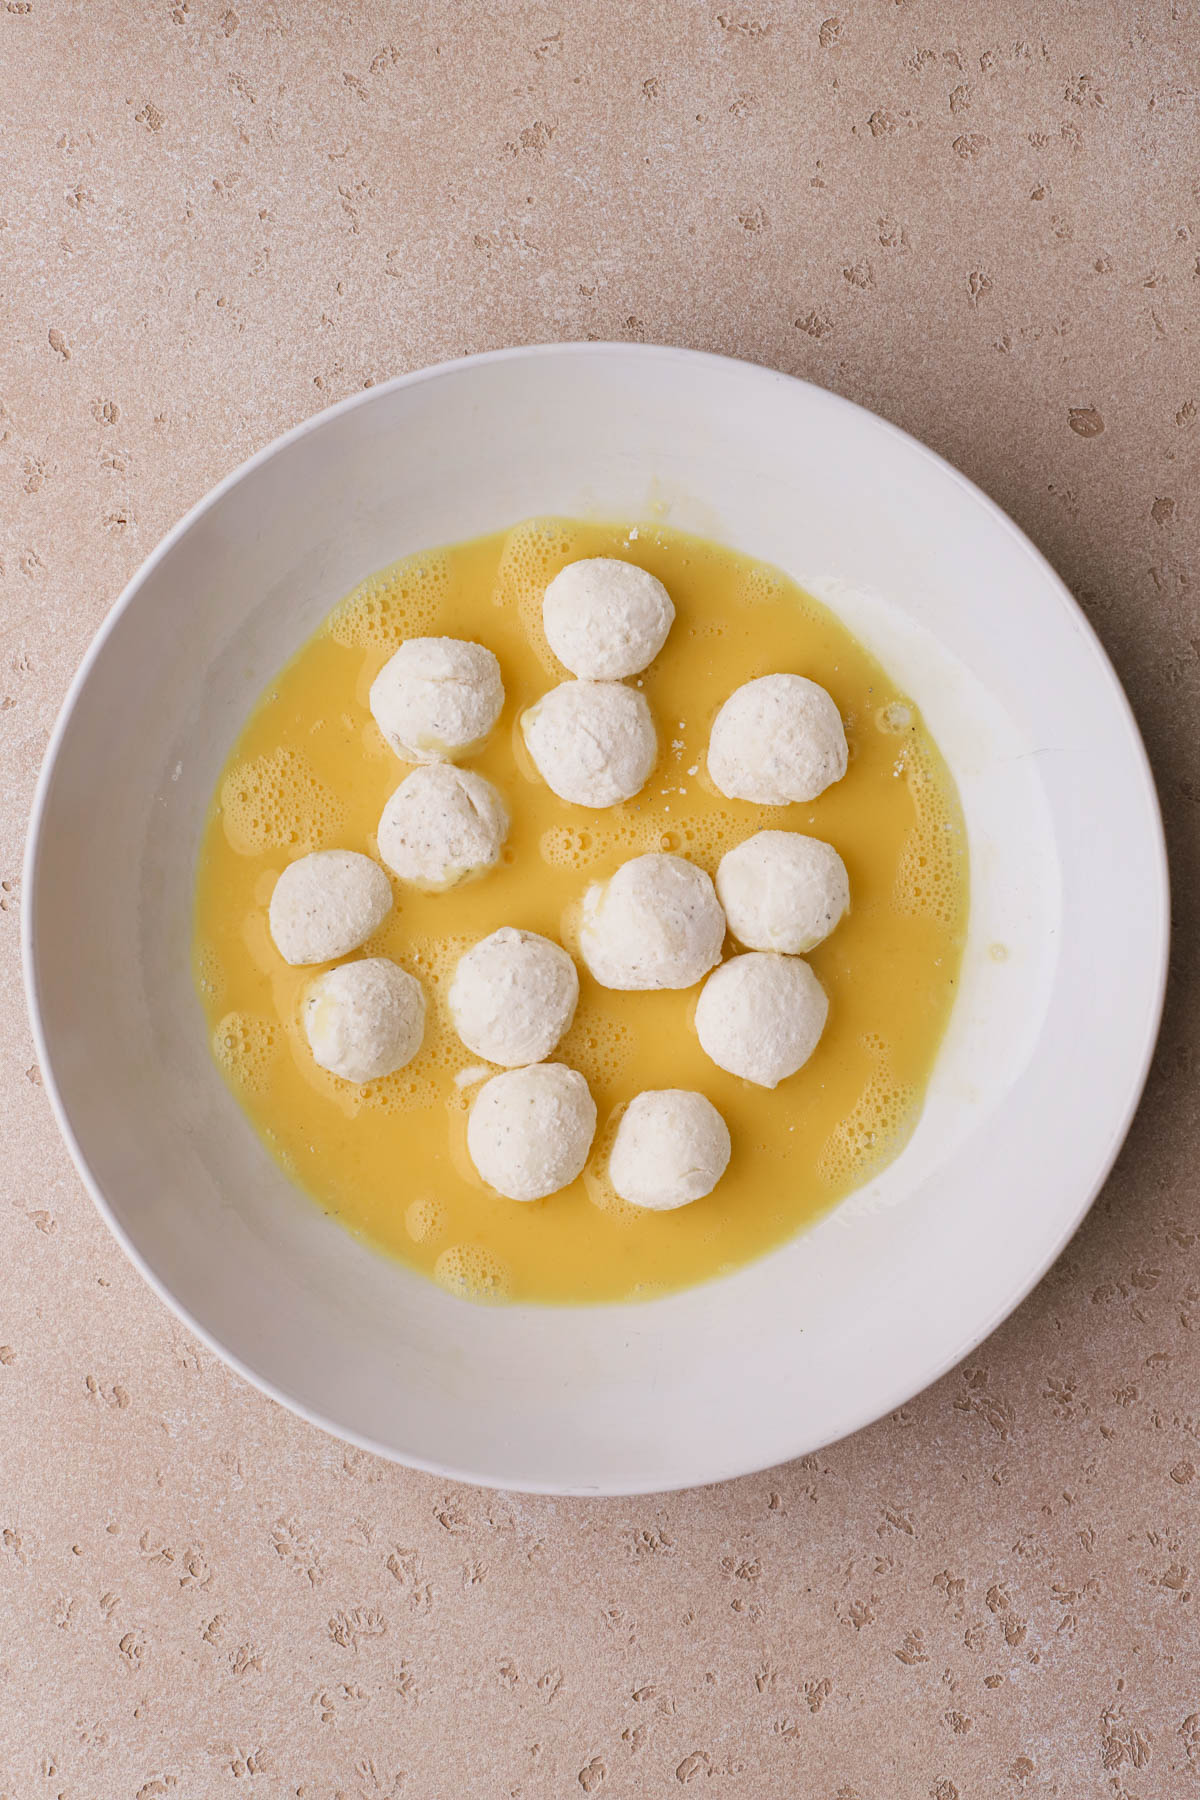 Mozzarella balls dipped in egg. 